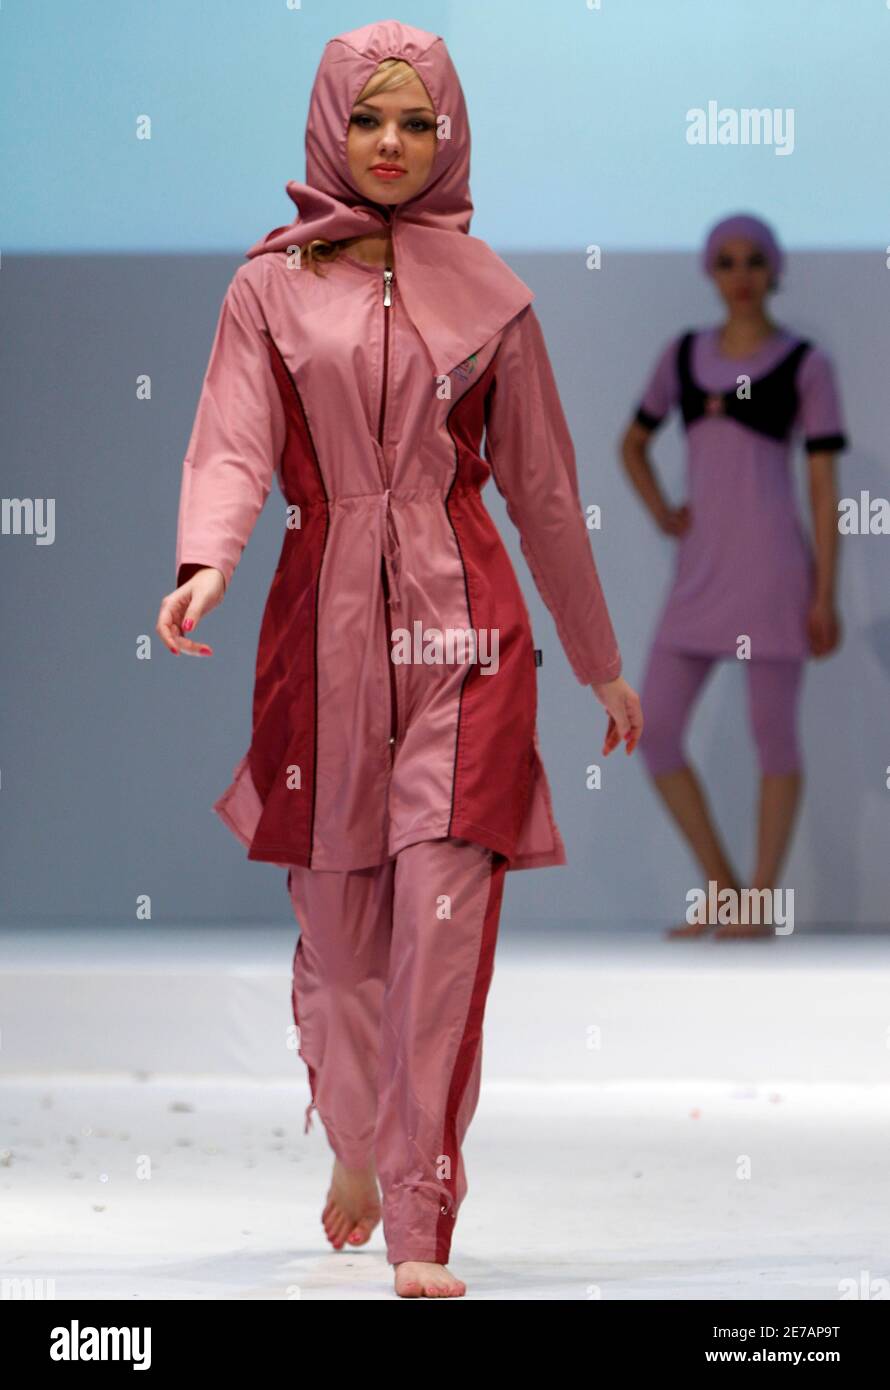 Ein türkisches Modell, bedeckt von Kopf bis Fuß, präsentiert einen Badeanzug  für Muslime während der Islamischen Modemesse in Istanbul am 11. April  2010. REUTERS/Murad Sezer (TÜRKEI - Schlagwörter: MODE Stockfotografie -  Alamy